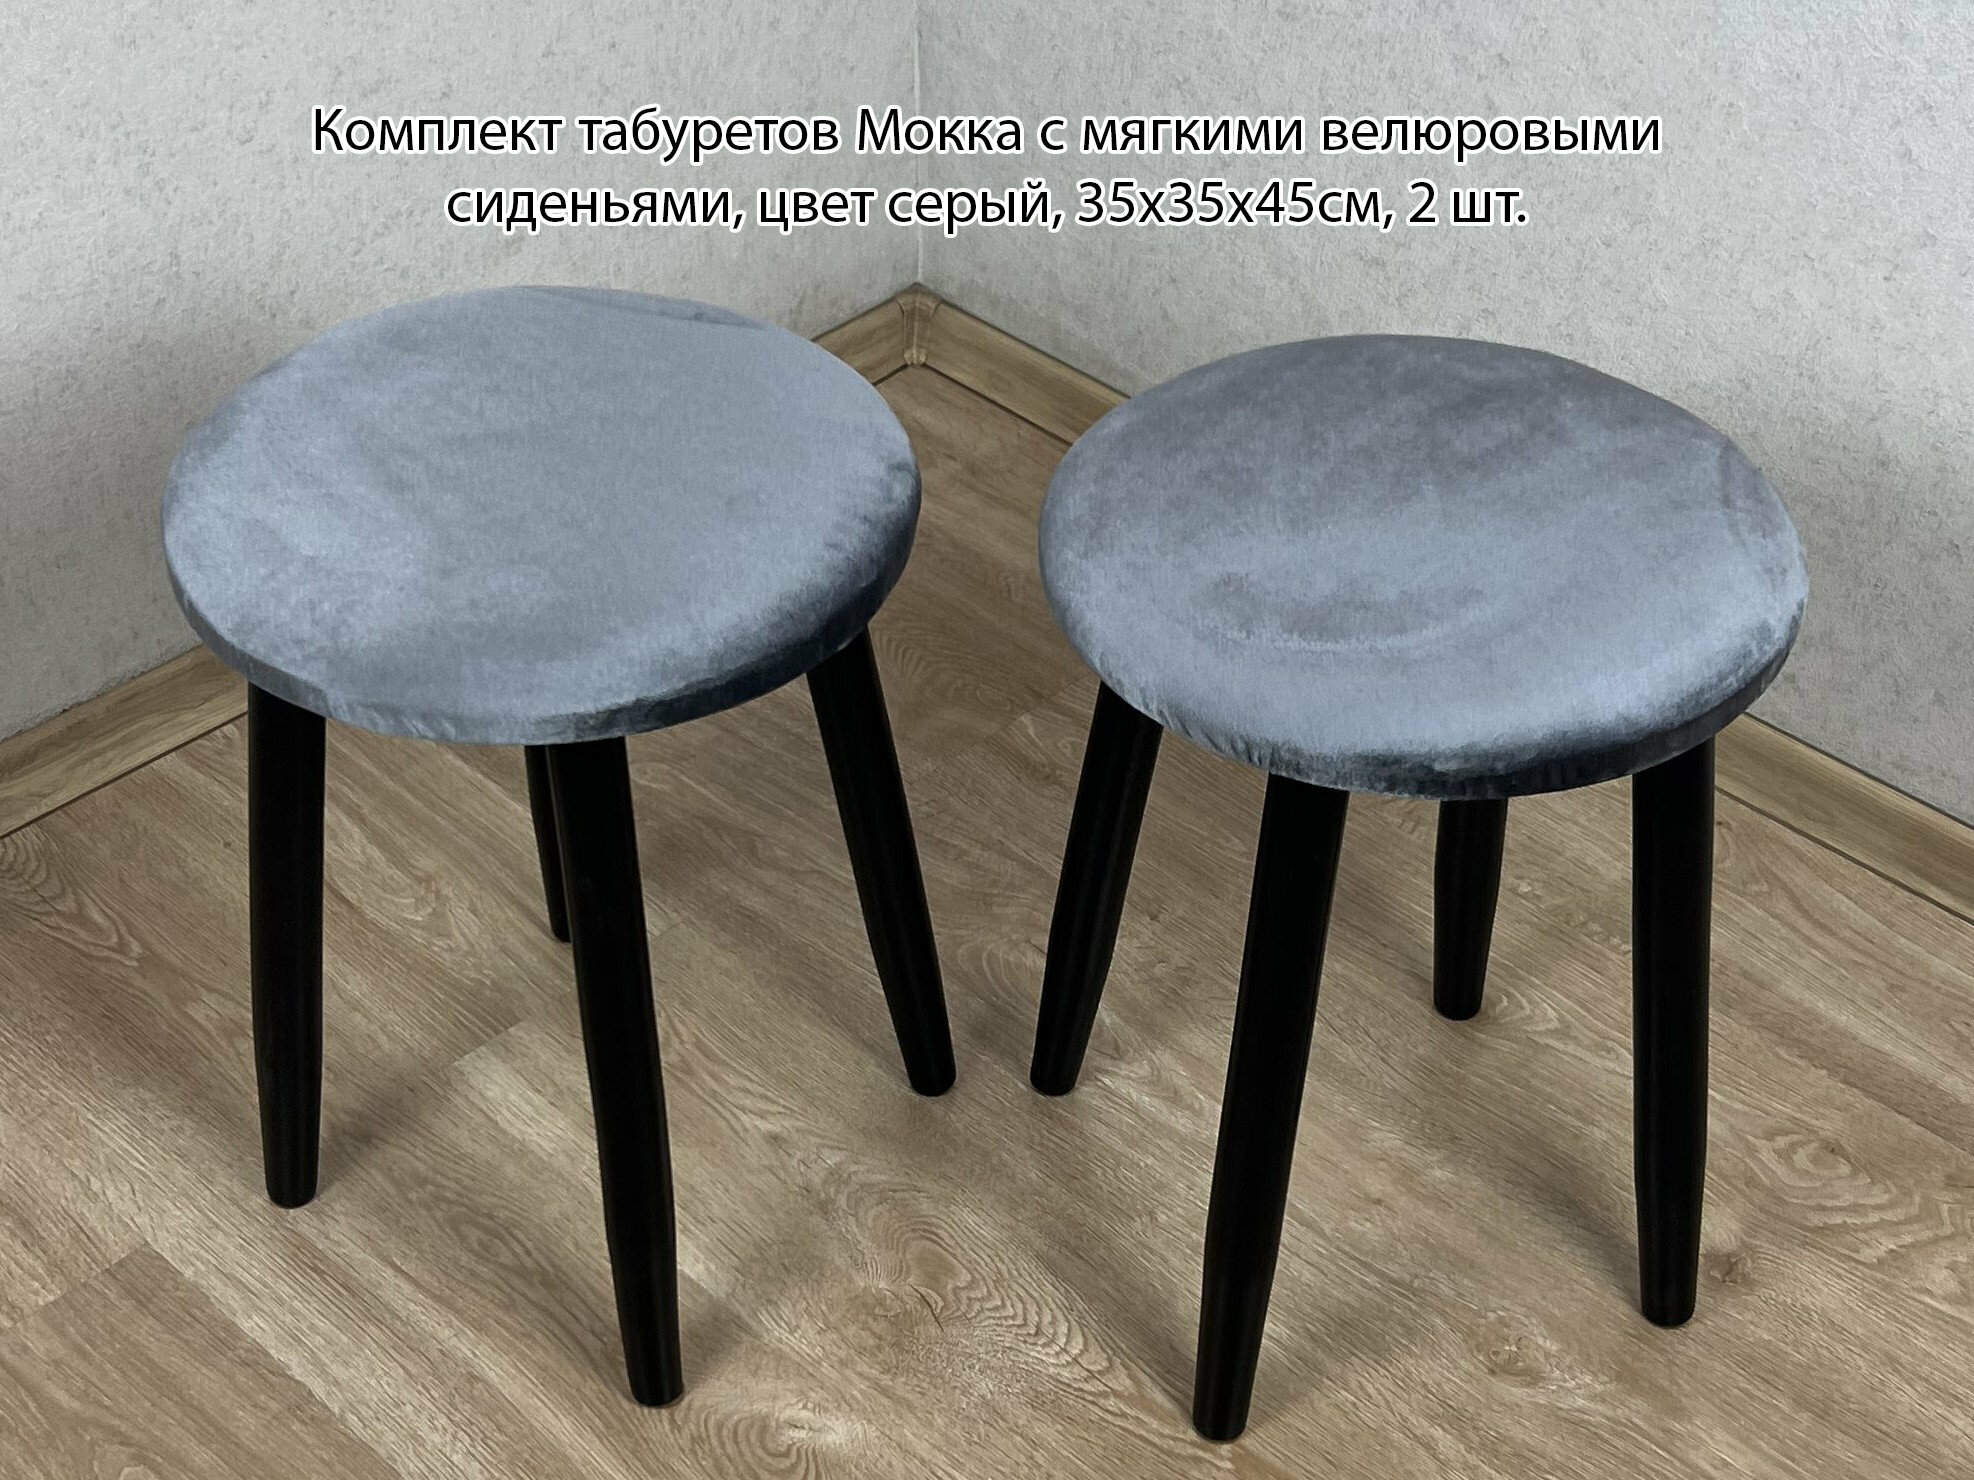 Комплект табуретов Мокка круглых для кухни с мягким велюровым сиденьем серого цвета на черных ножках, 2 шт.